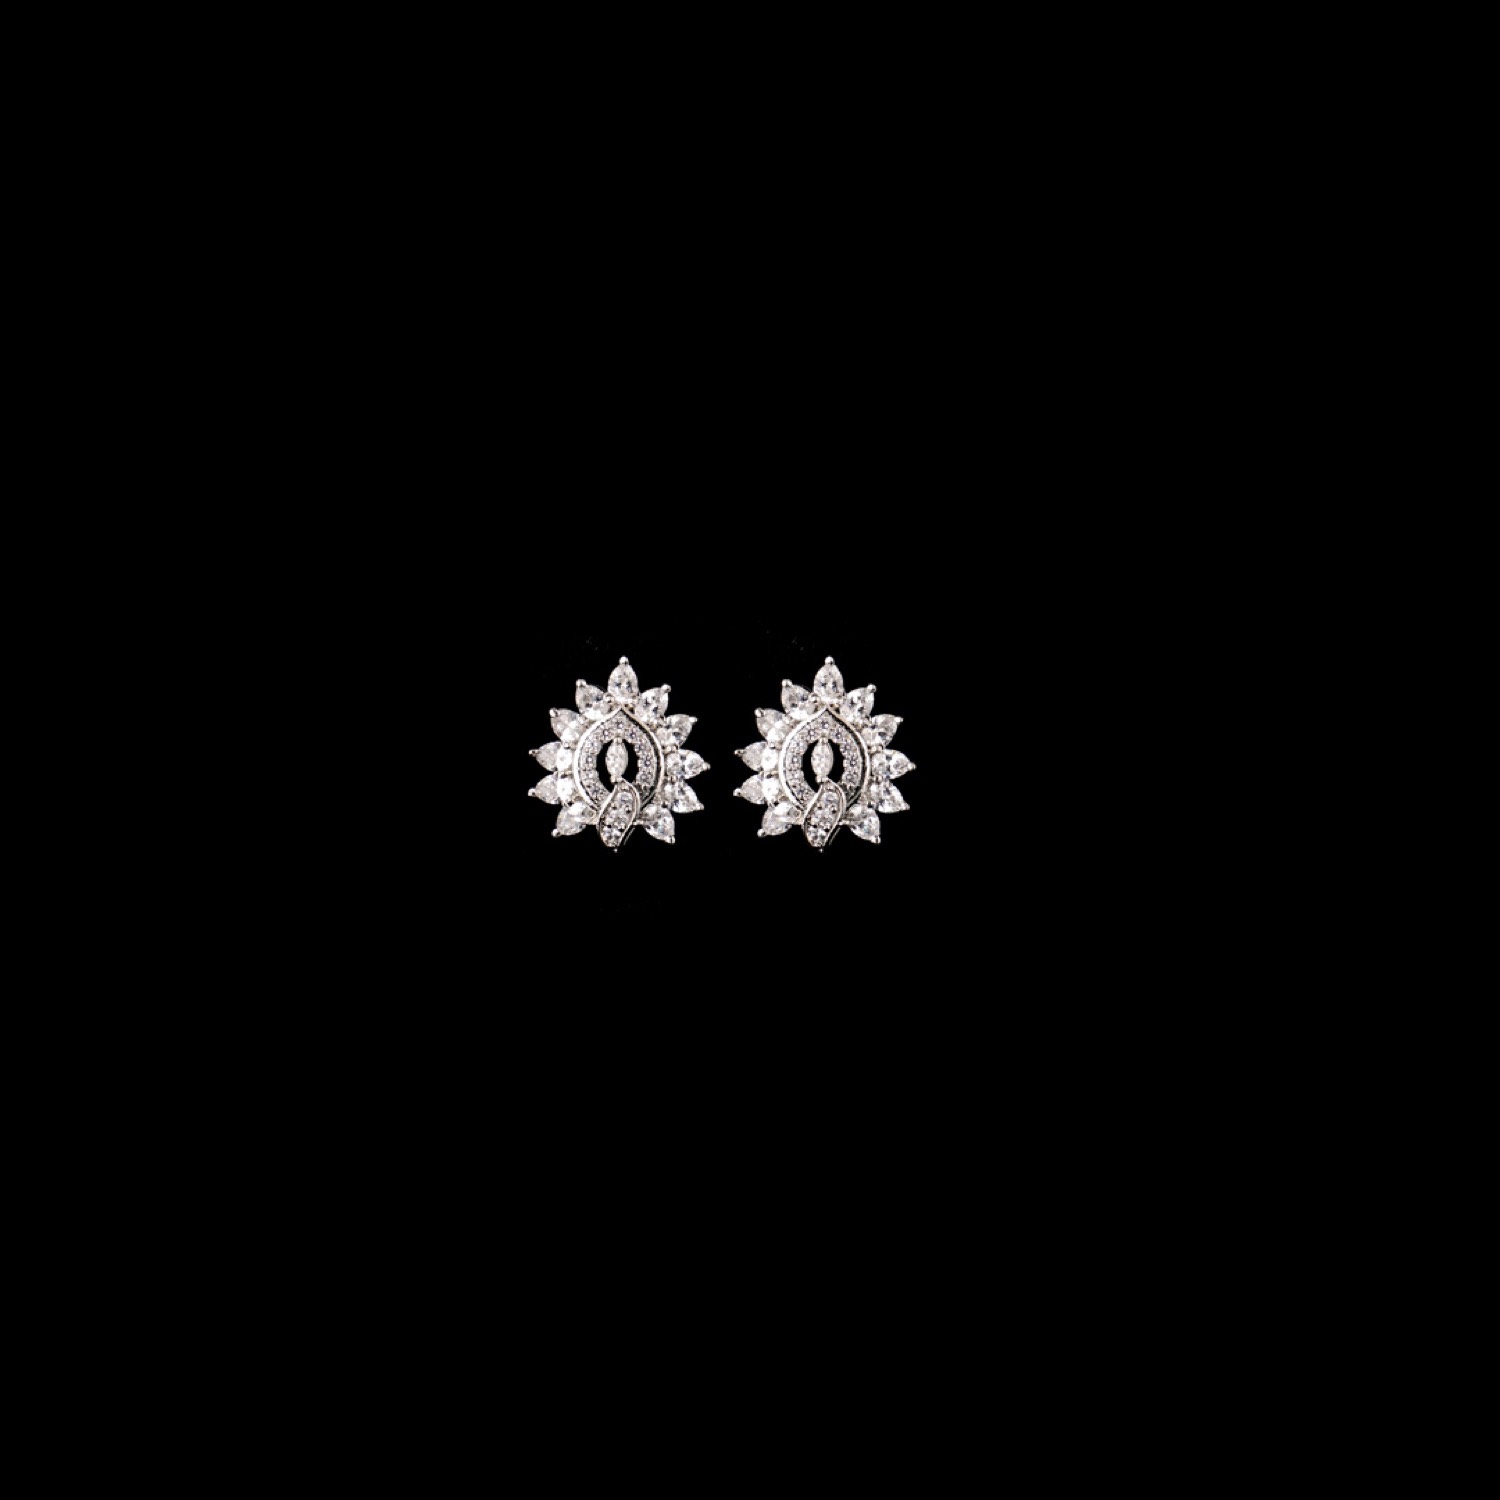 varam_earrings_102022_pear_shaped_flower_design_white_stone_silver_earrings-1